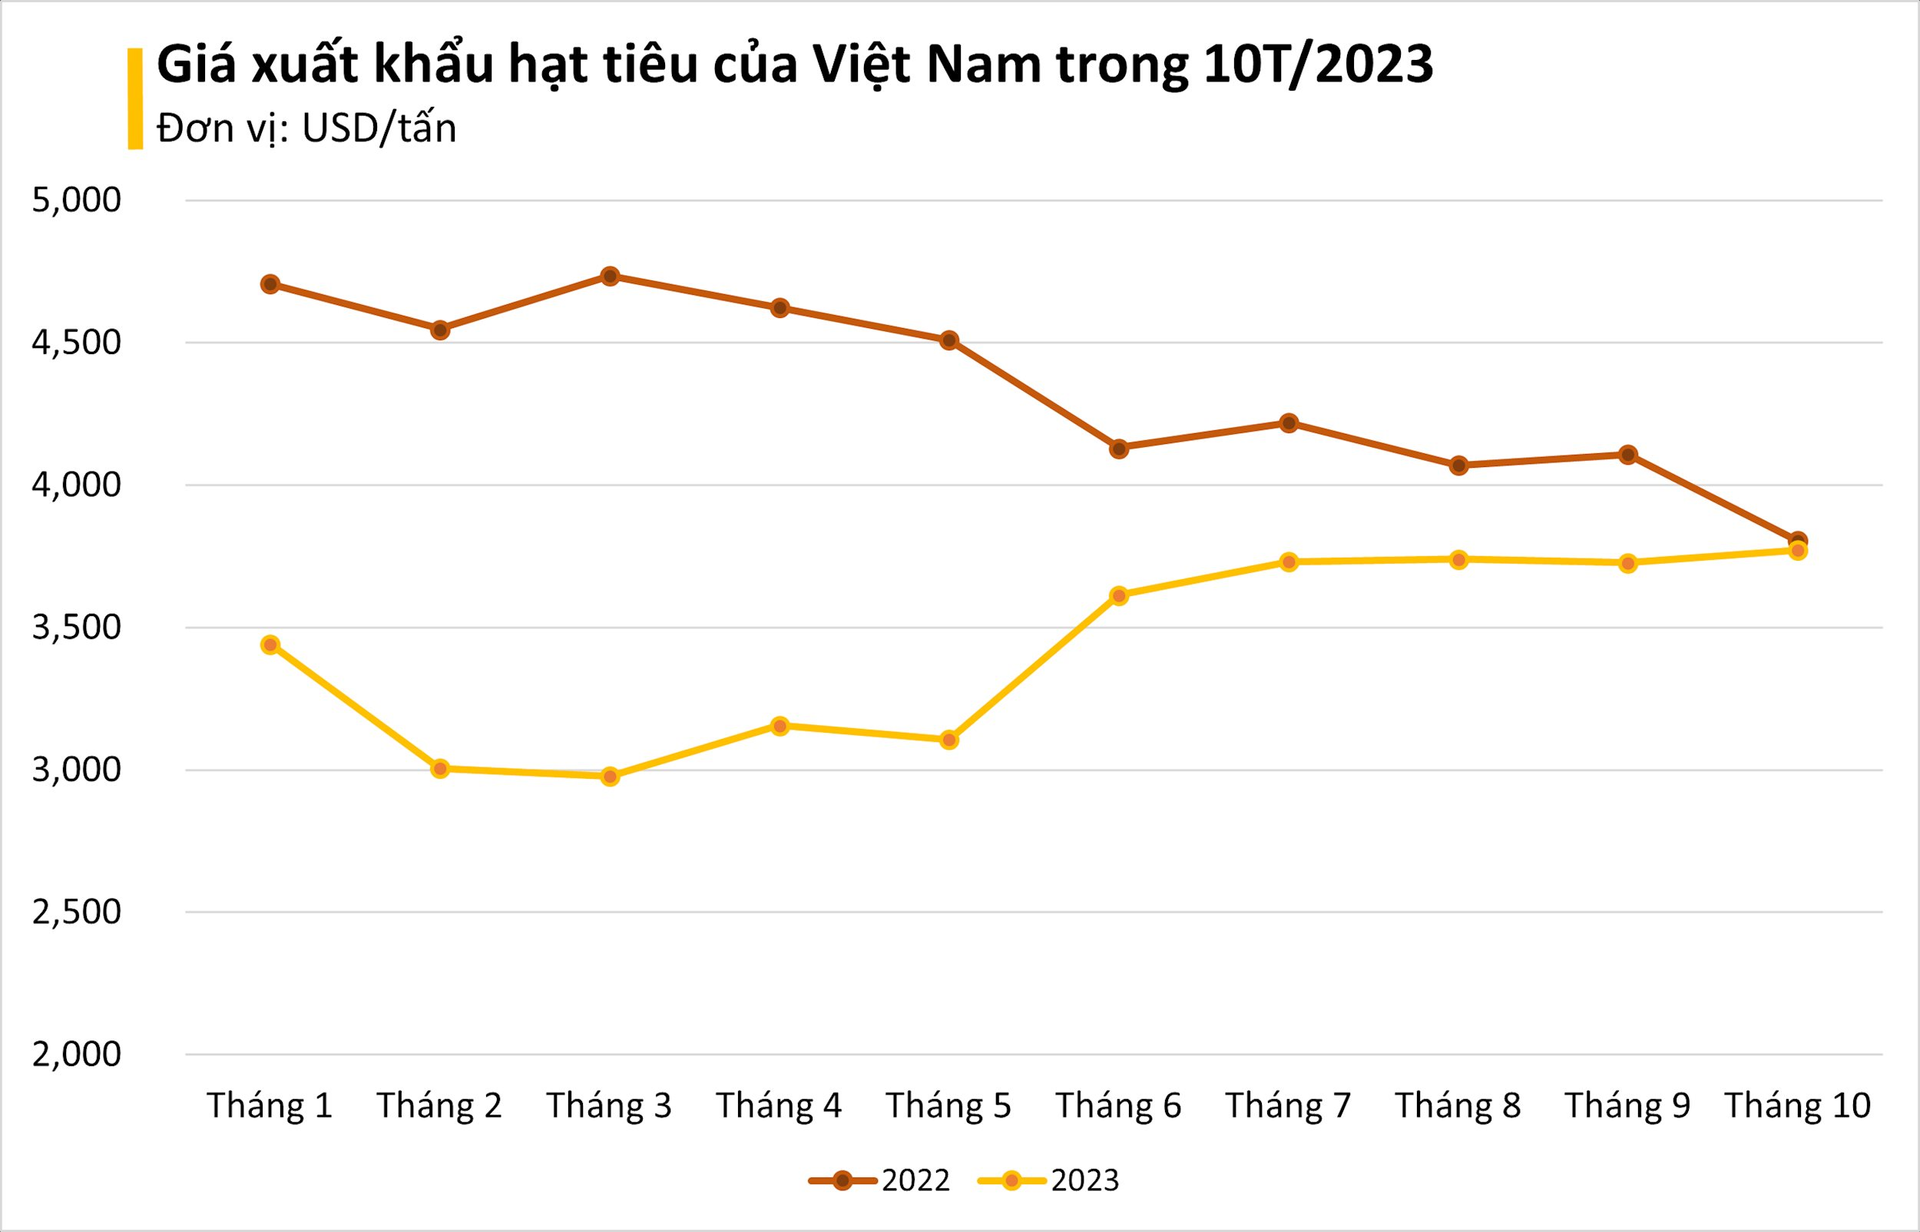 Chất lượng cao, giá giảm, 'hạt ngọc quý' của Việt Nam được Trung Quốc liên tục đổ tiền mua: xuất khẩu tăng hơn 200%, Việt Nam nắm giữ sản lượng đứng đầu thế giới - Ảnh 1.